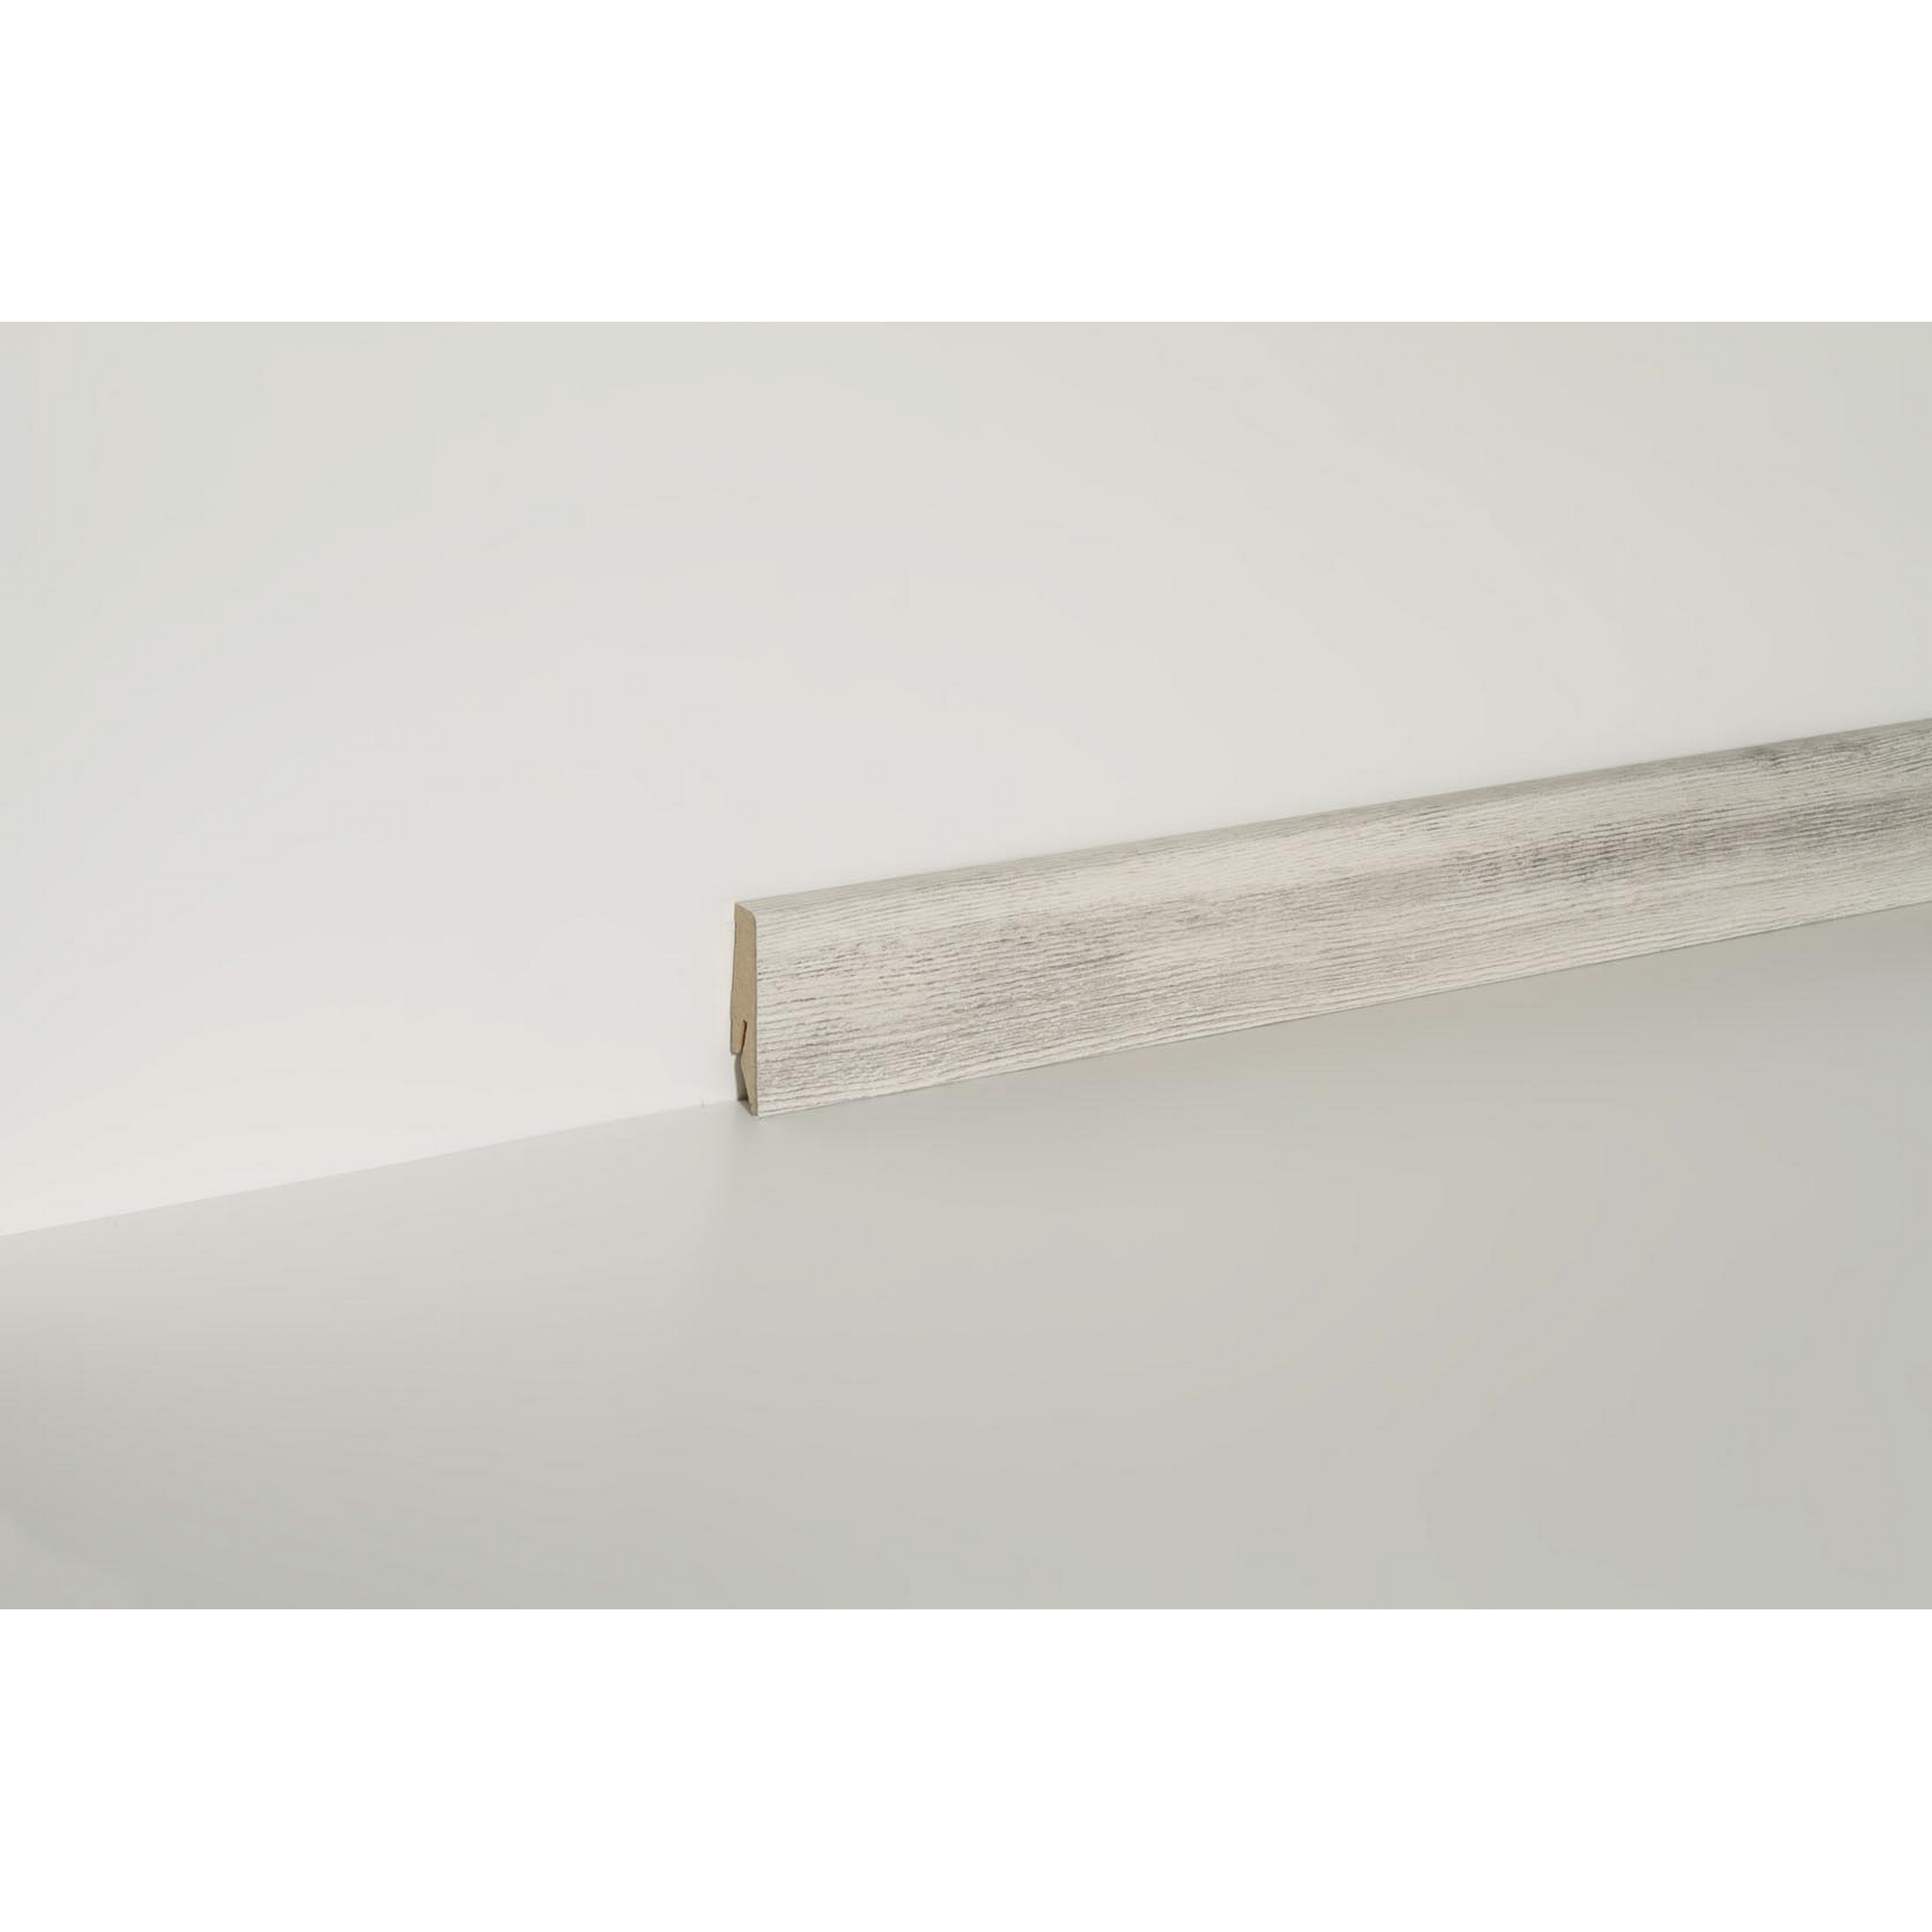 Sockelleiste 'Clip' Wintereiche grau-weiß 240 x 5,8 x 1,9 cm + product picture